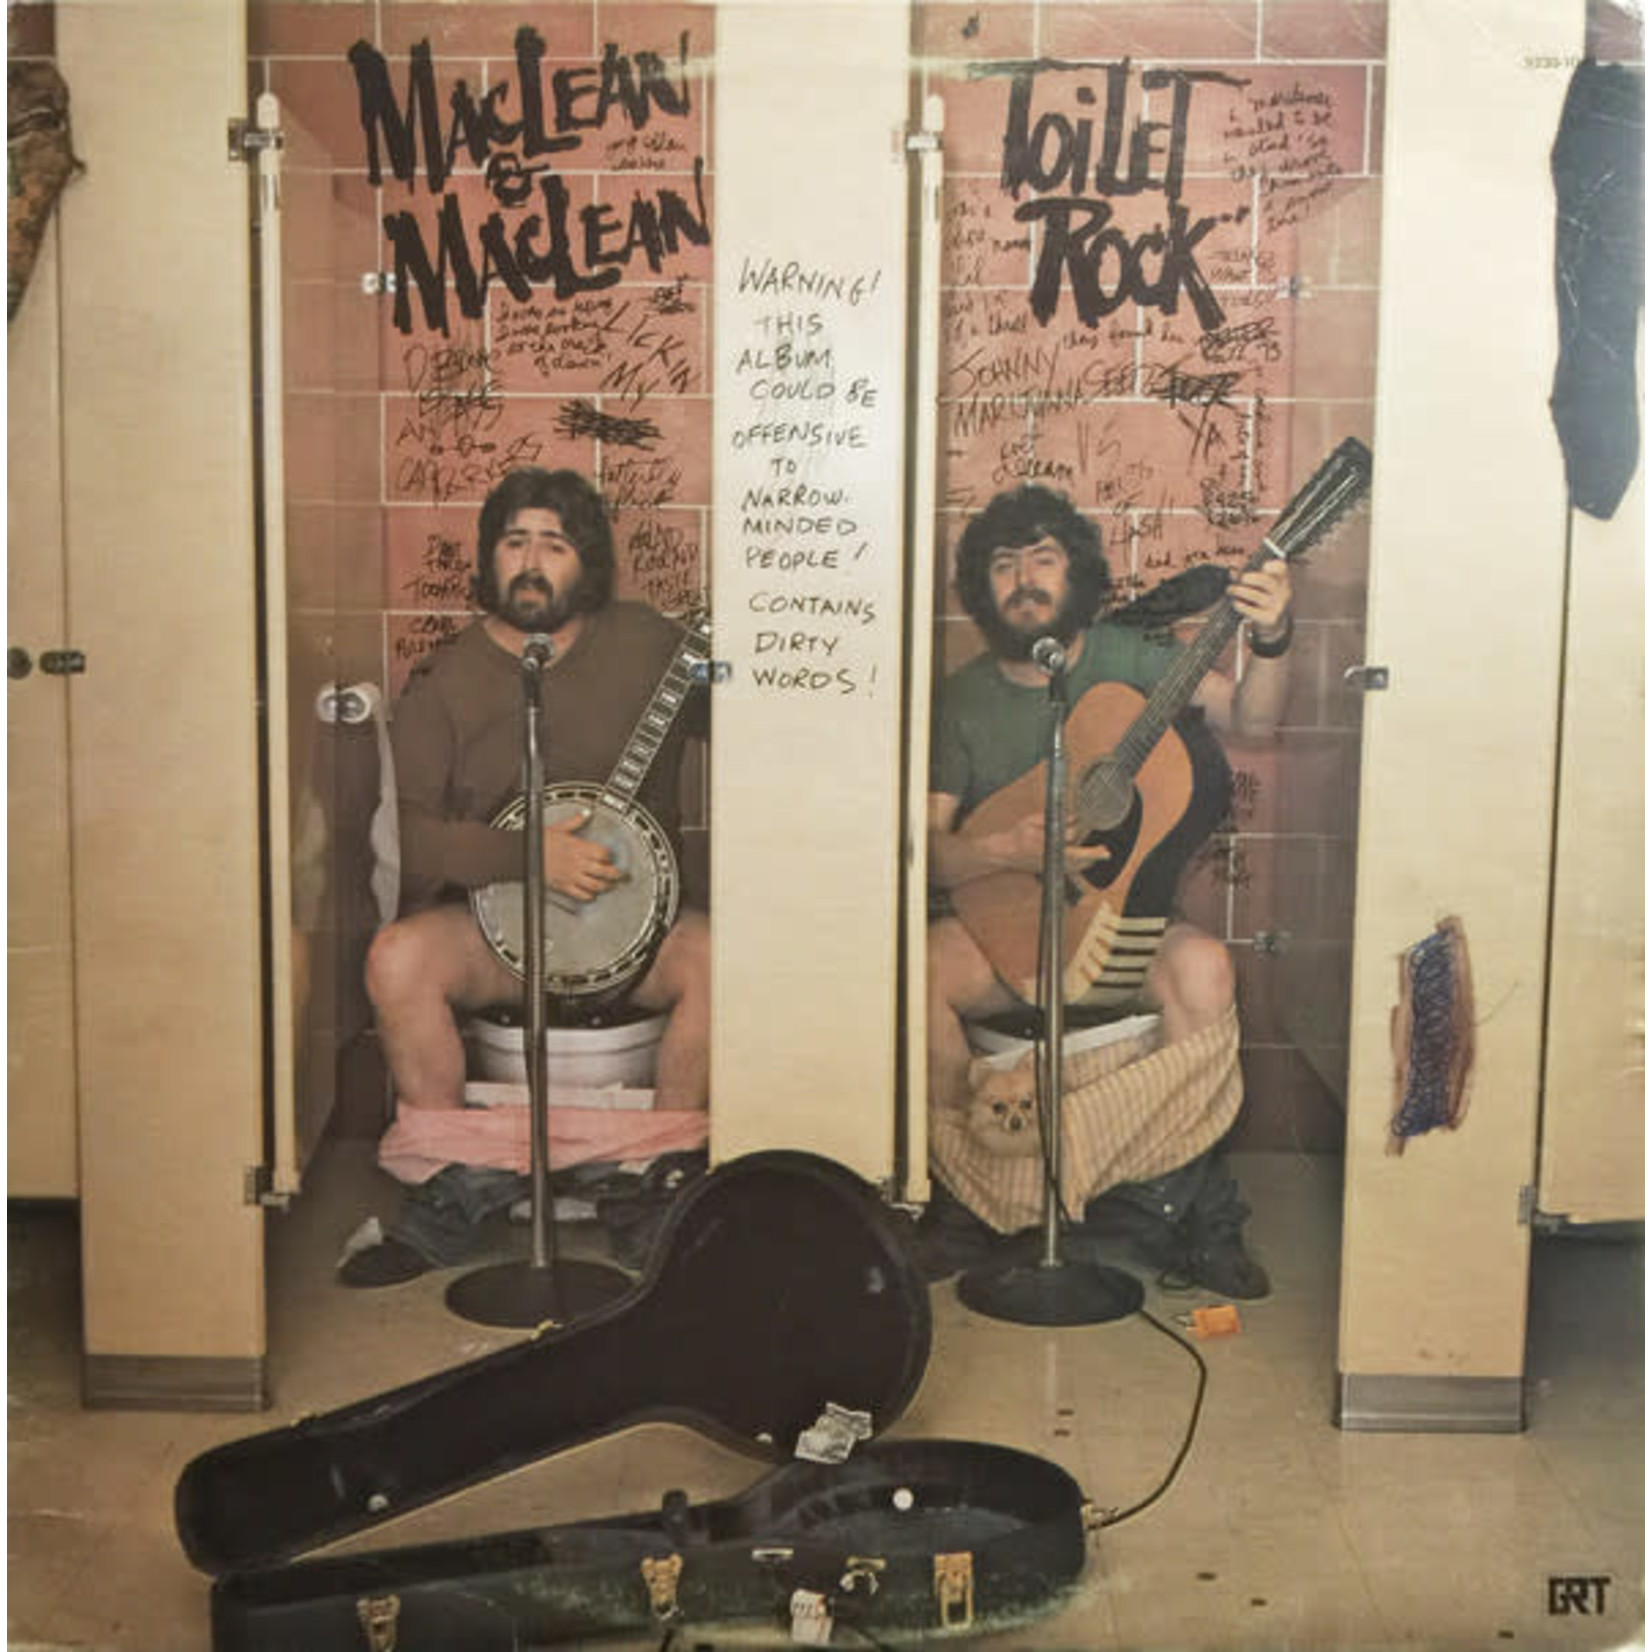 Maclean And Maclean Maclean And Maclean – Toilet Rock (VG, 1974, LP, GRT – 9230-1048)